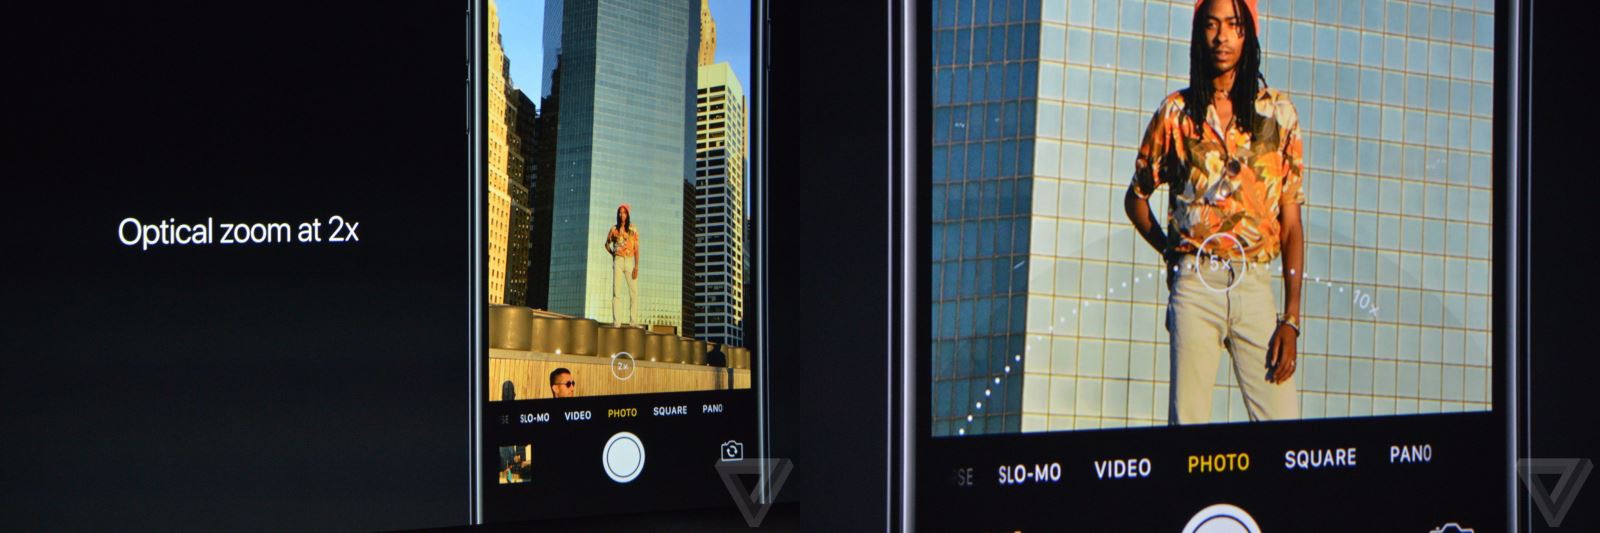 Camera trên iPhone 7 Plus có khả năng zoom quang ấn tượng